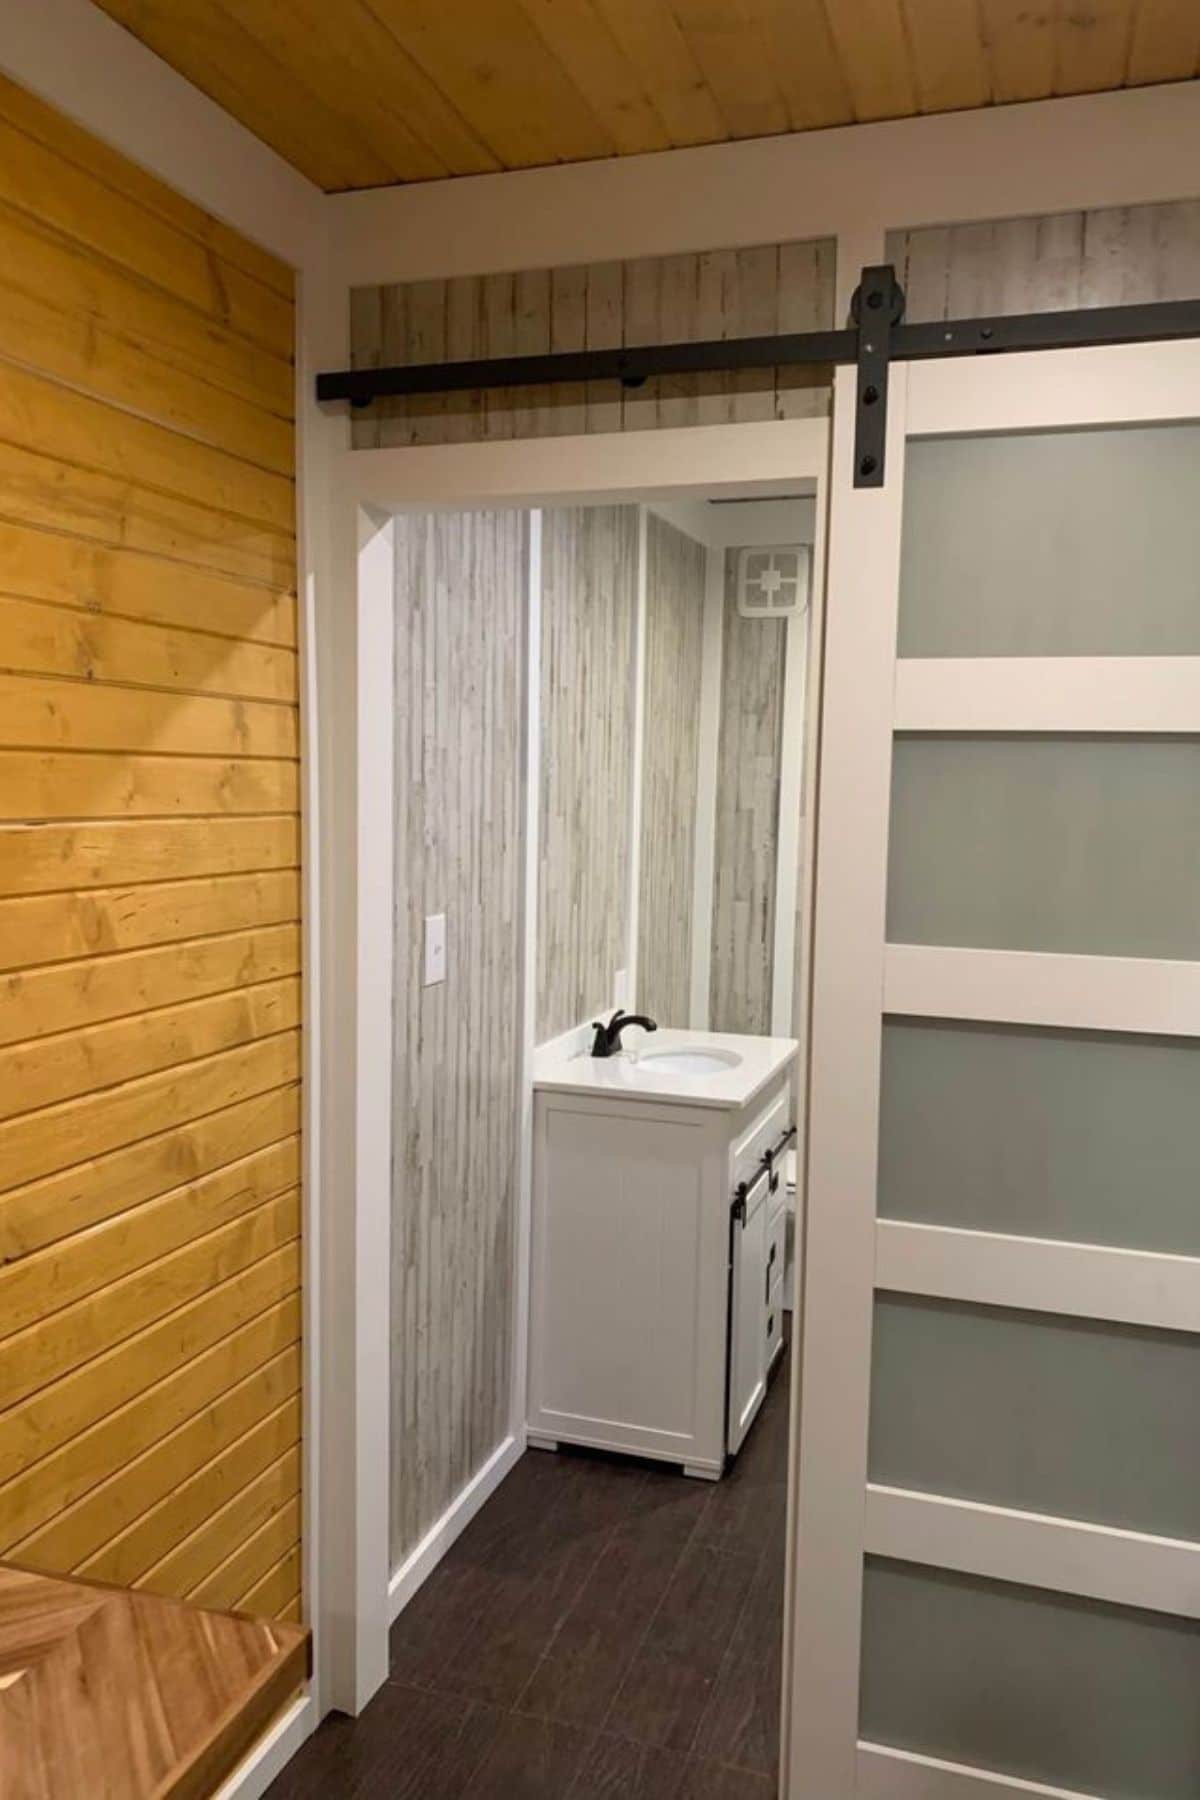 gray and white barn door by bathroom door opening